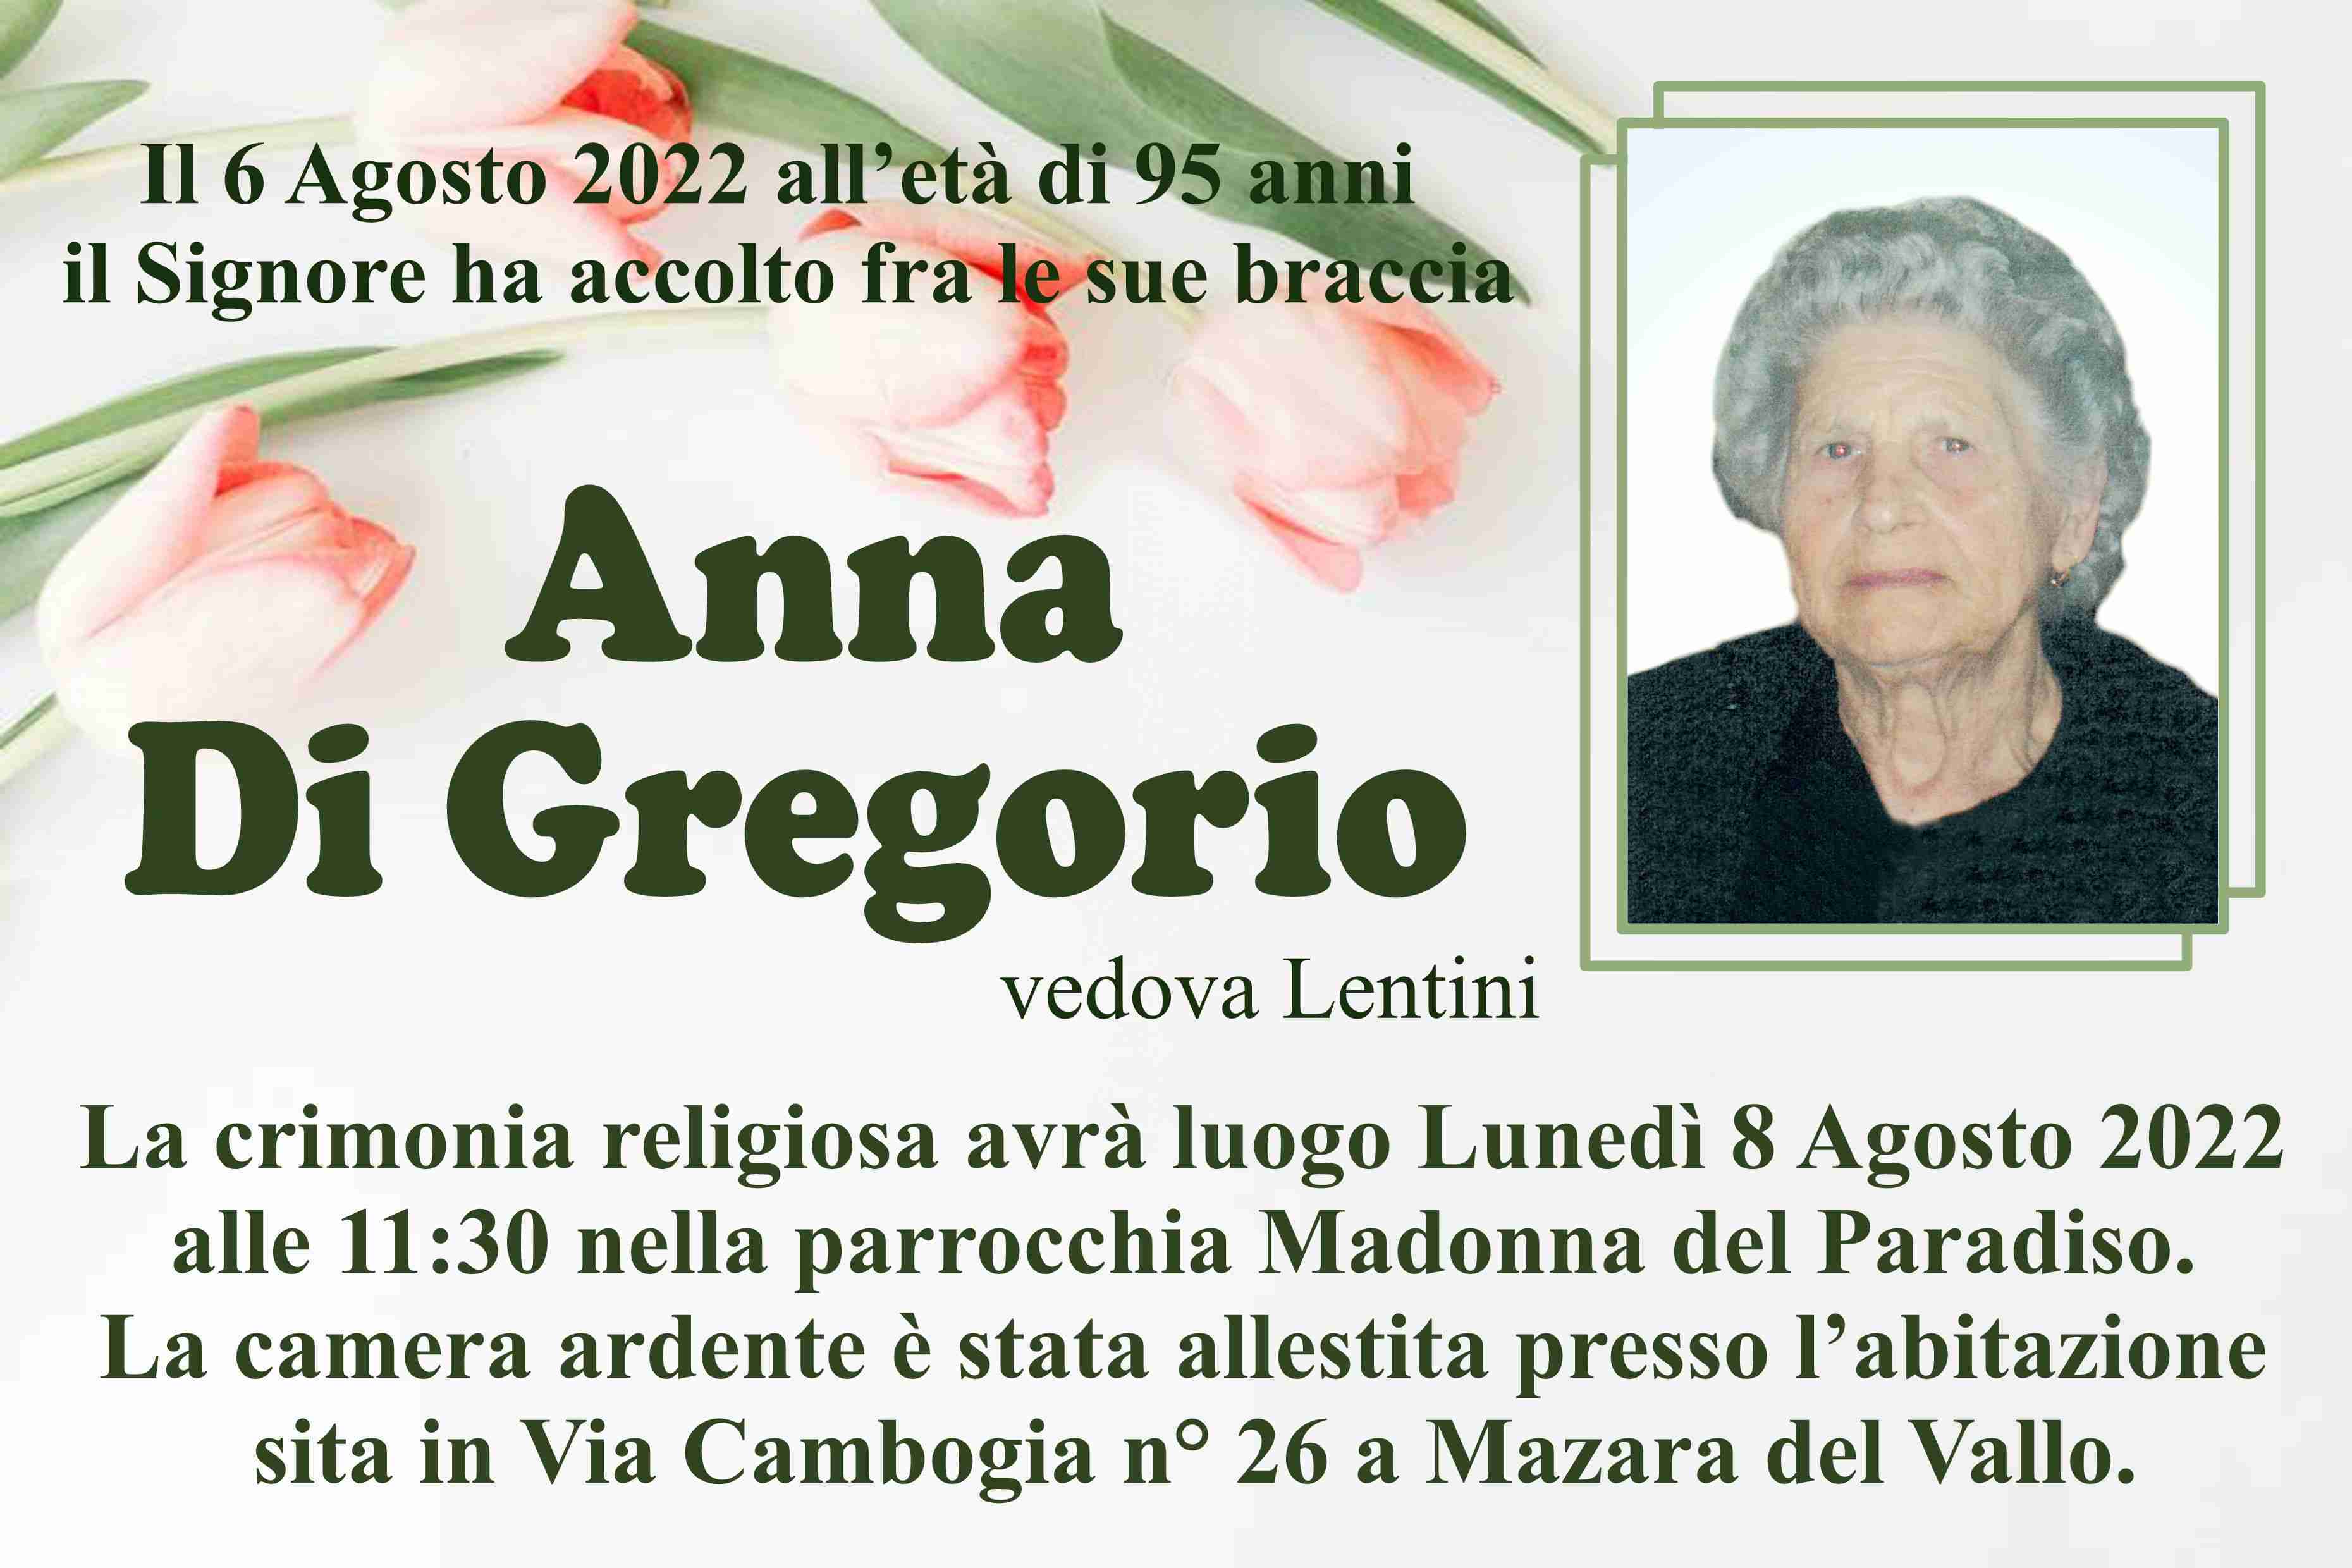 Anna Di Gregorio